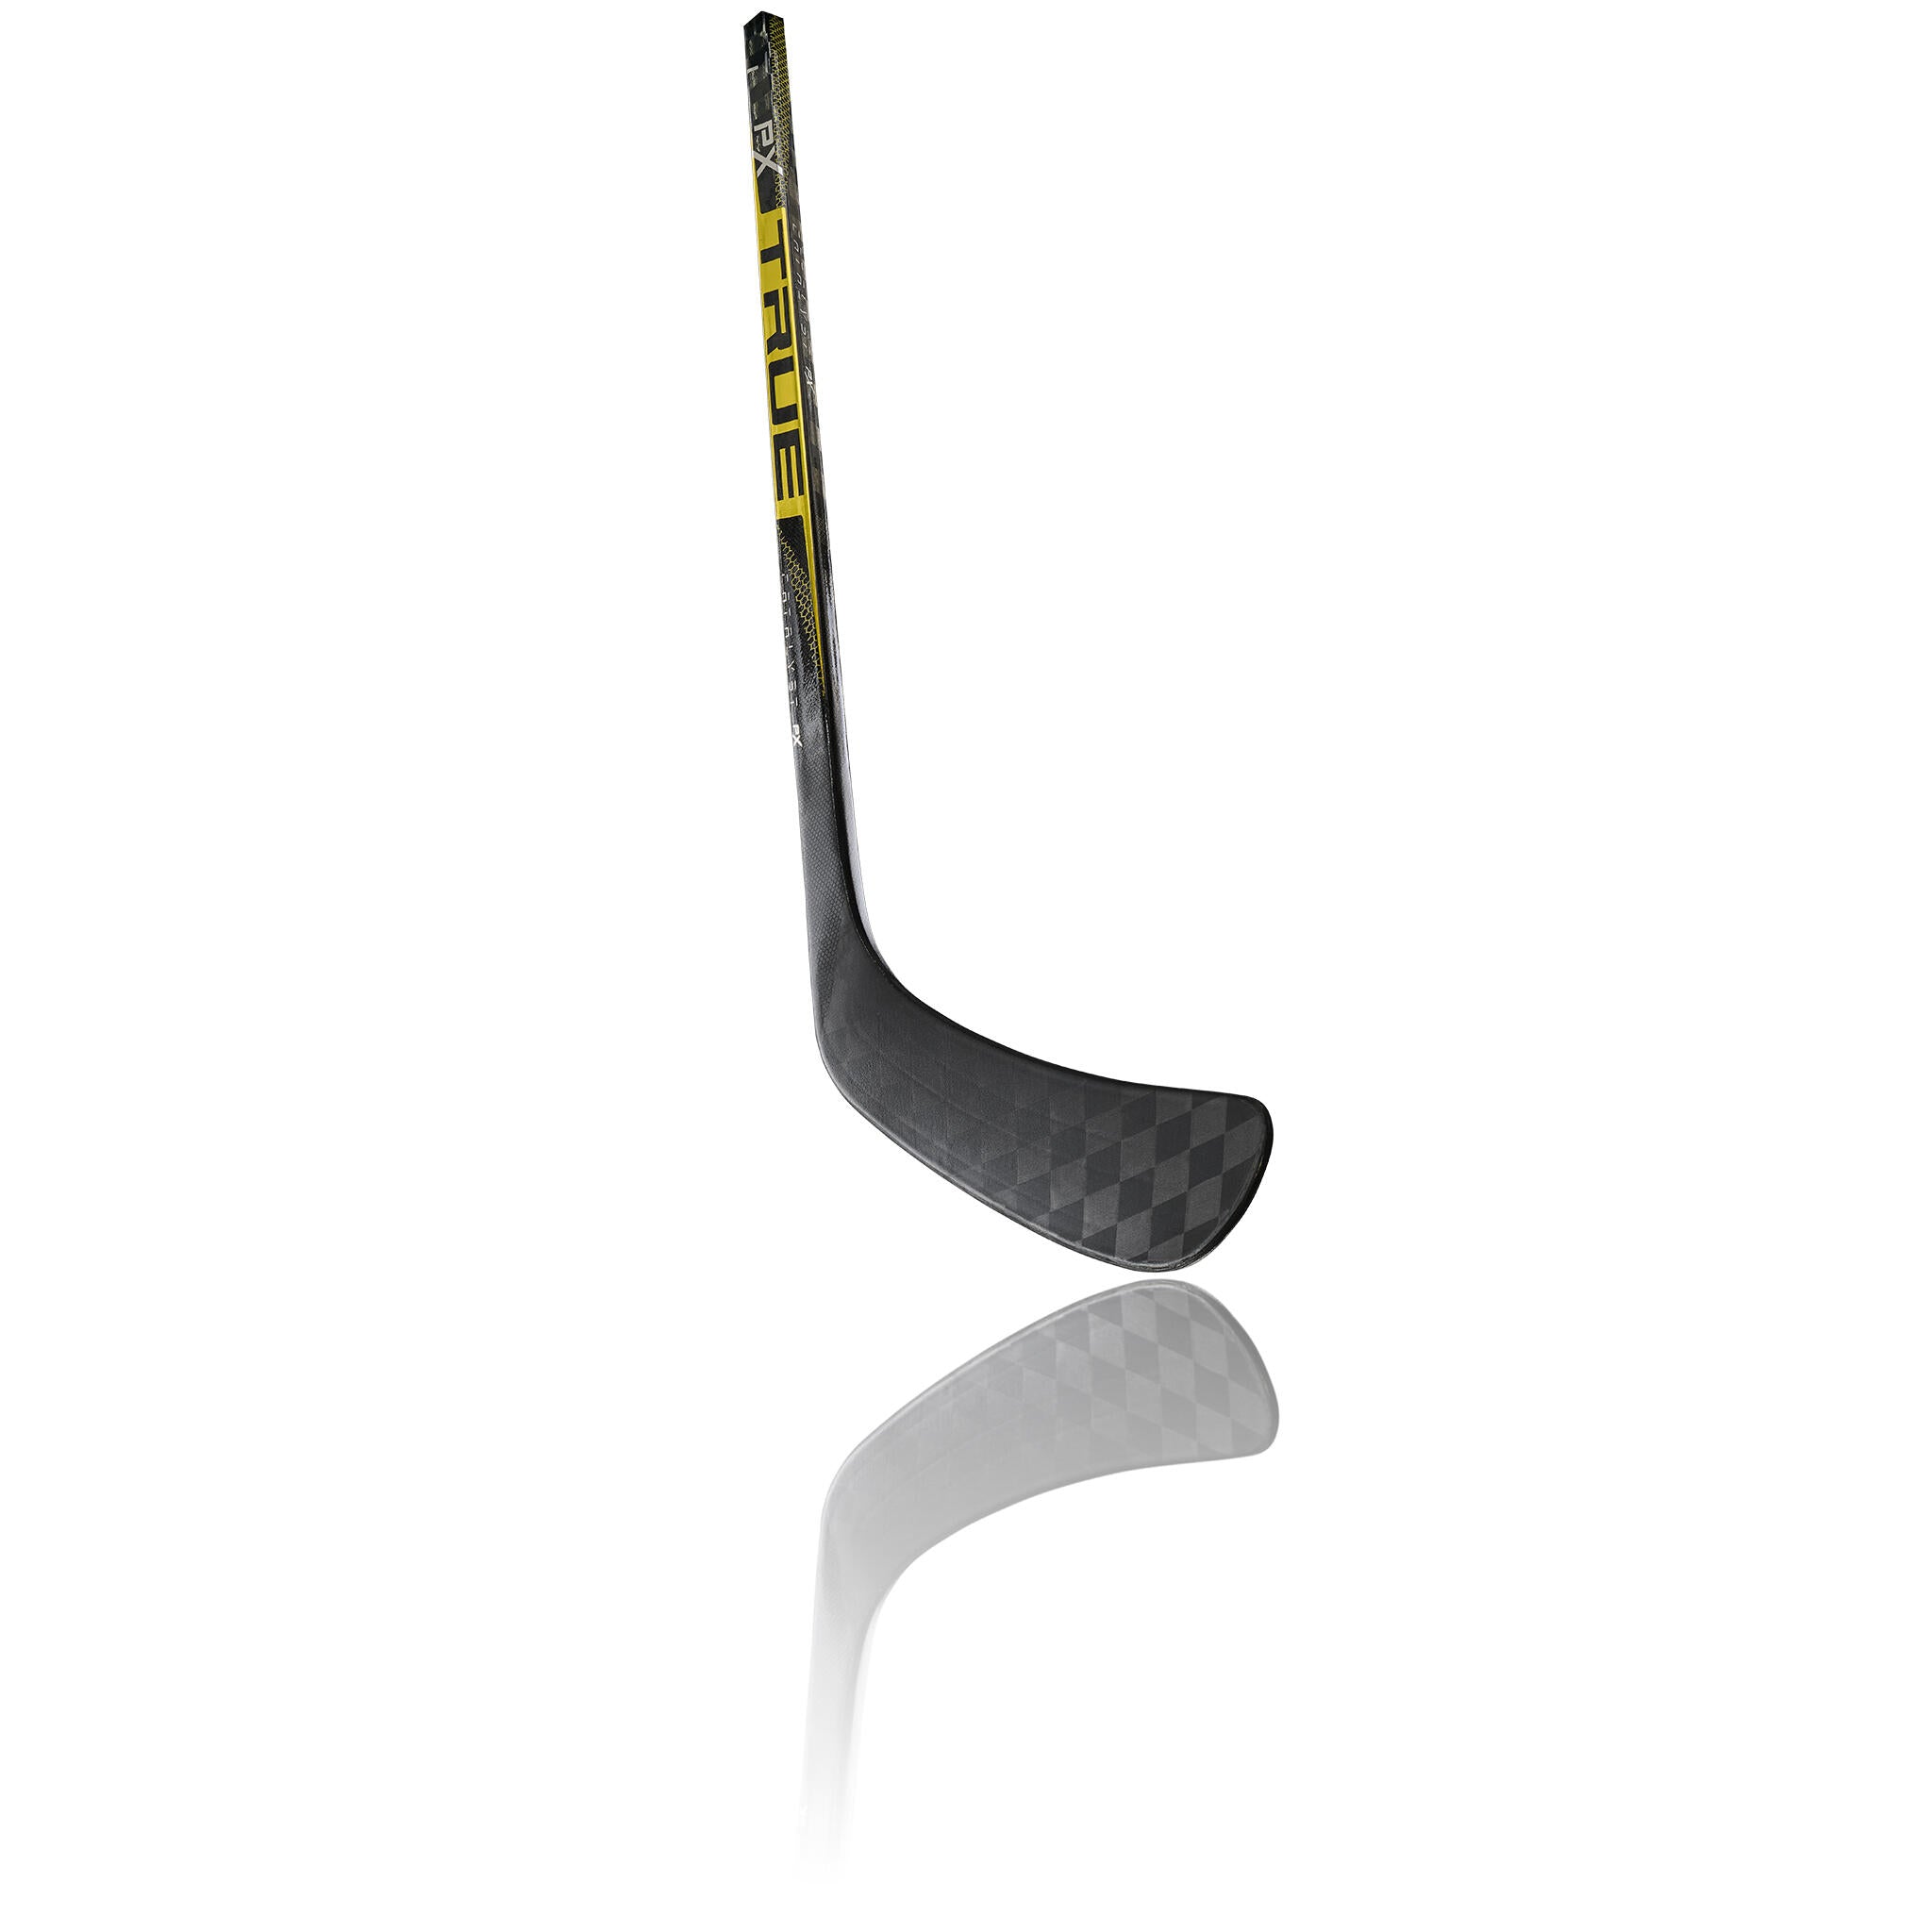 TRUE A Series Black Grip Composite Hockey Stick - Senior